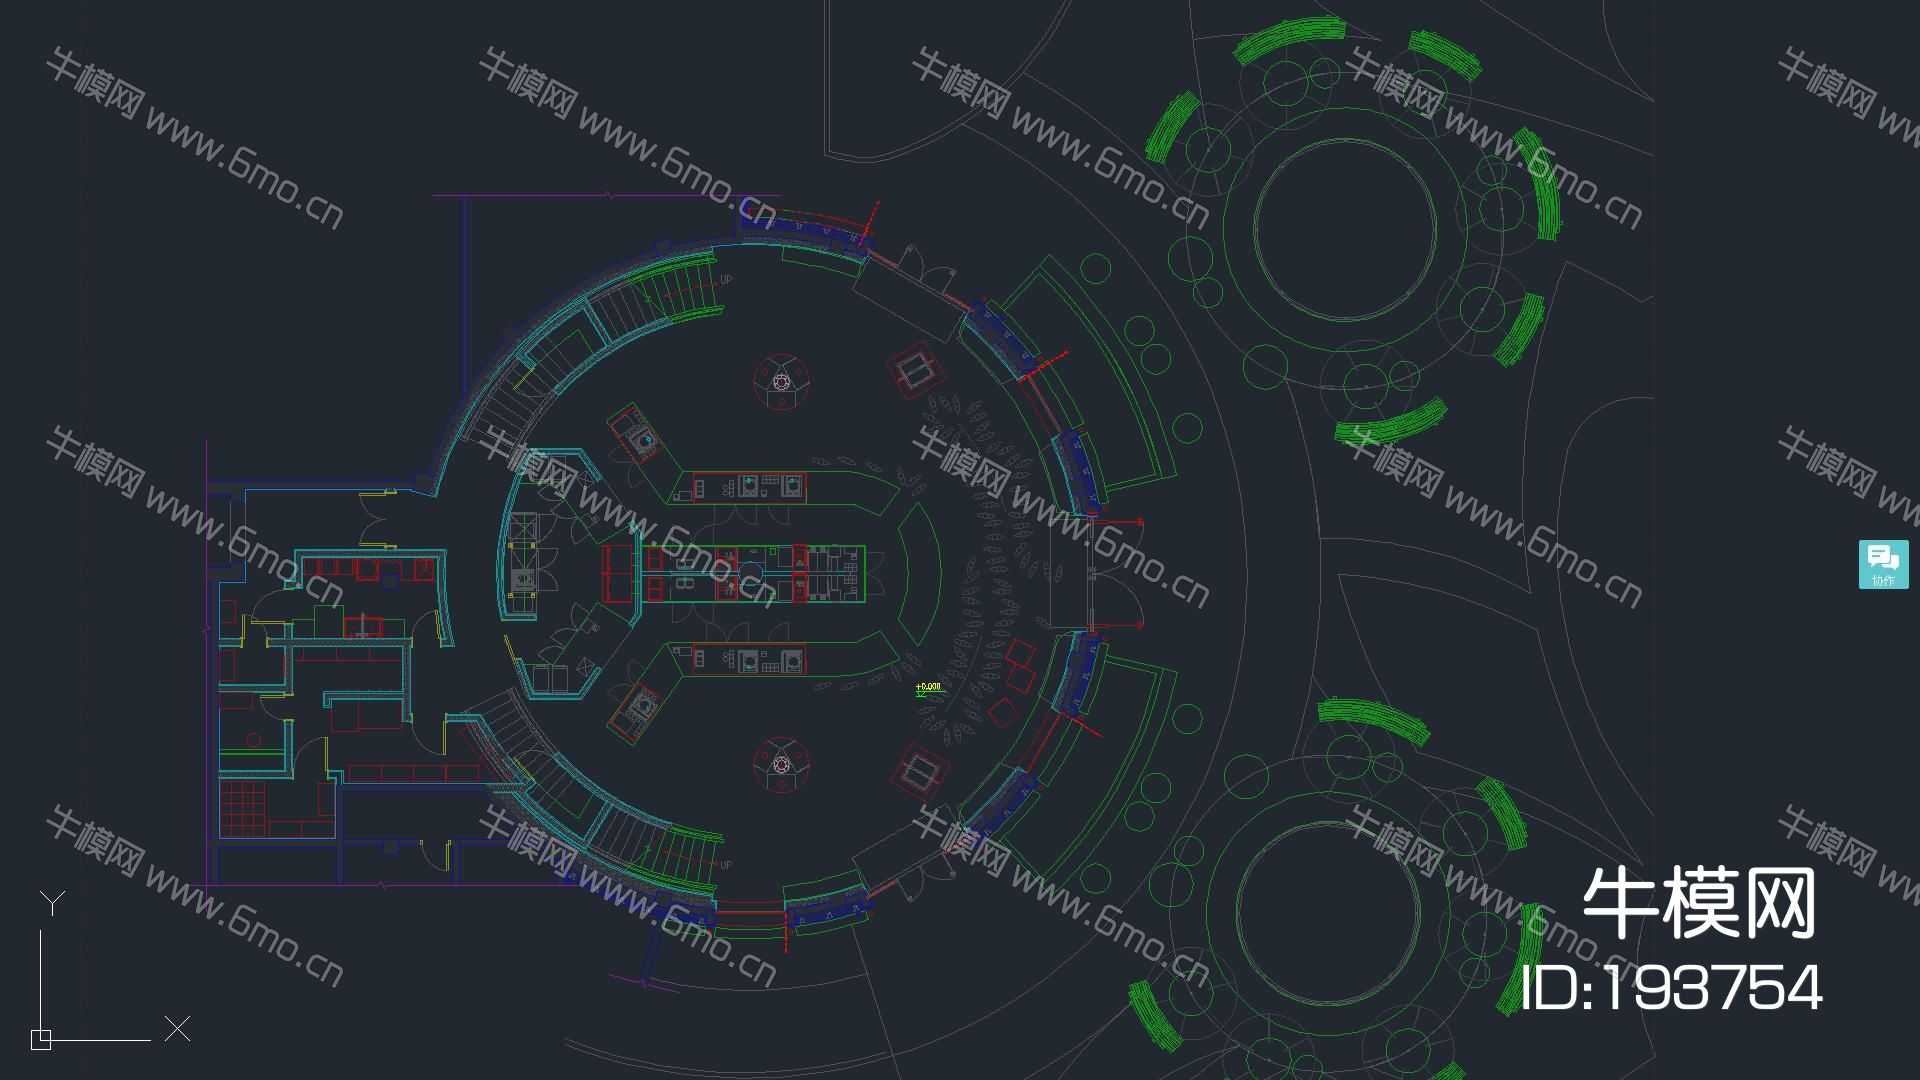 星巴克-上海GOOD HOUSE迪士尼店施工圖+實景拍攝+方案+物料表